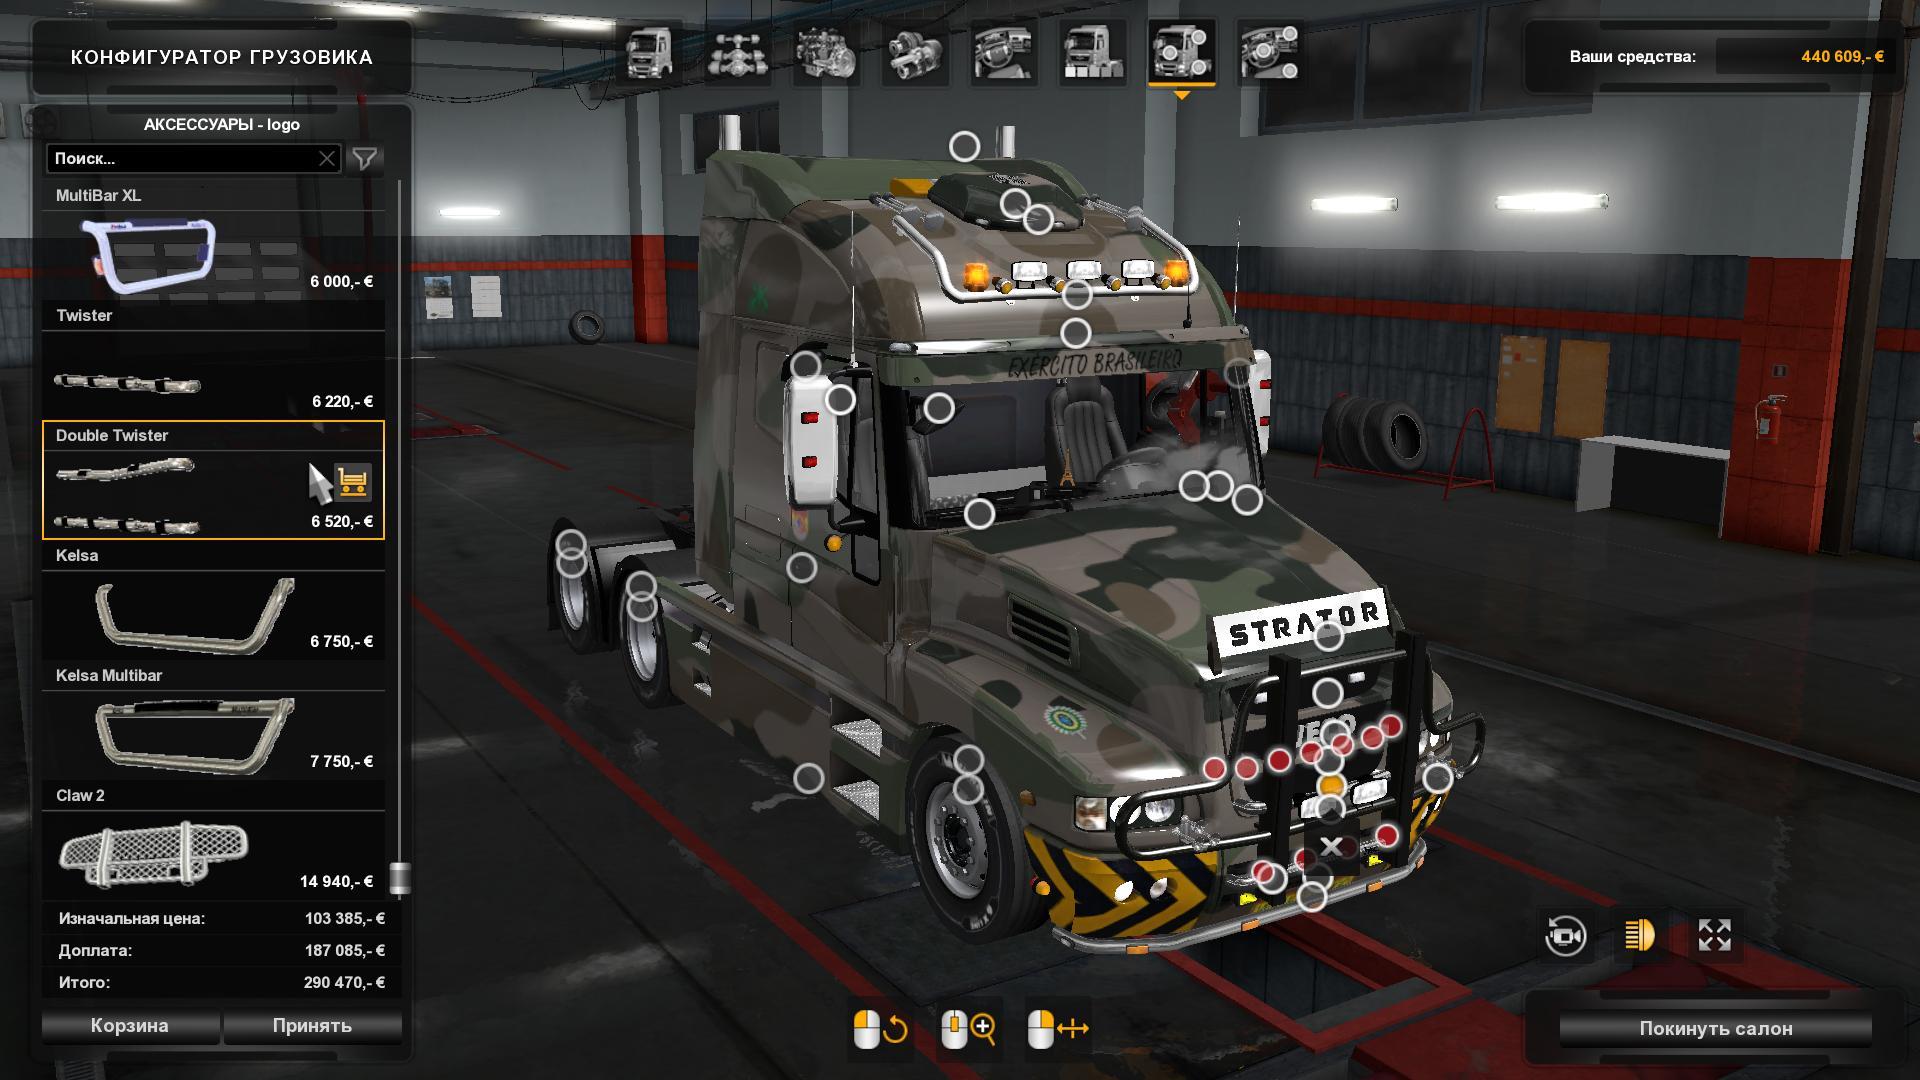 Truck Iveco Strator v5.0